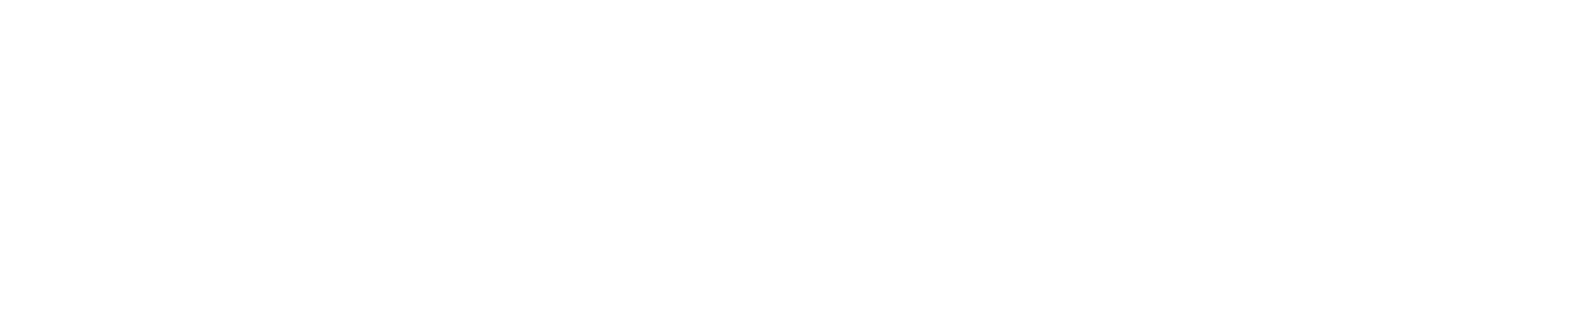 Progenity logo grand pour les fonds sombres (PNG transparent)